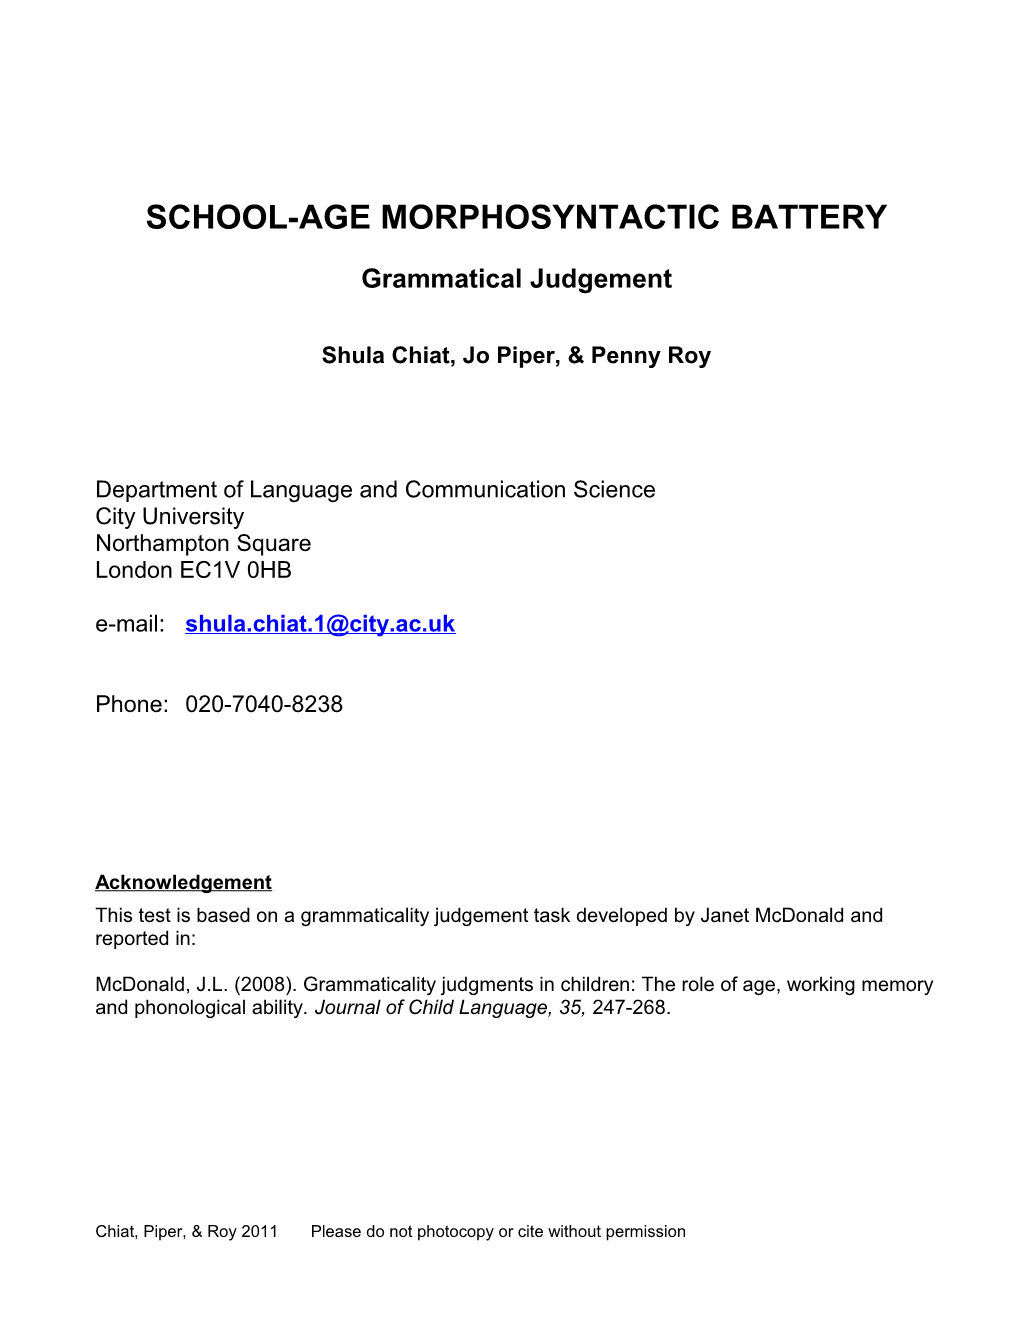 School-Age Morphosyntactic Battery